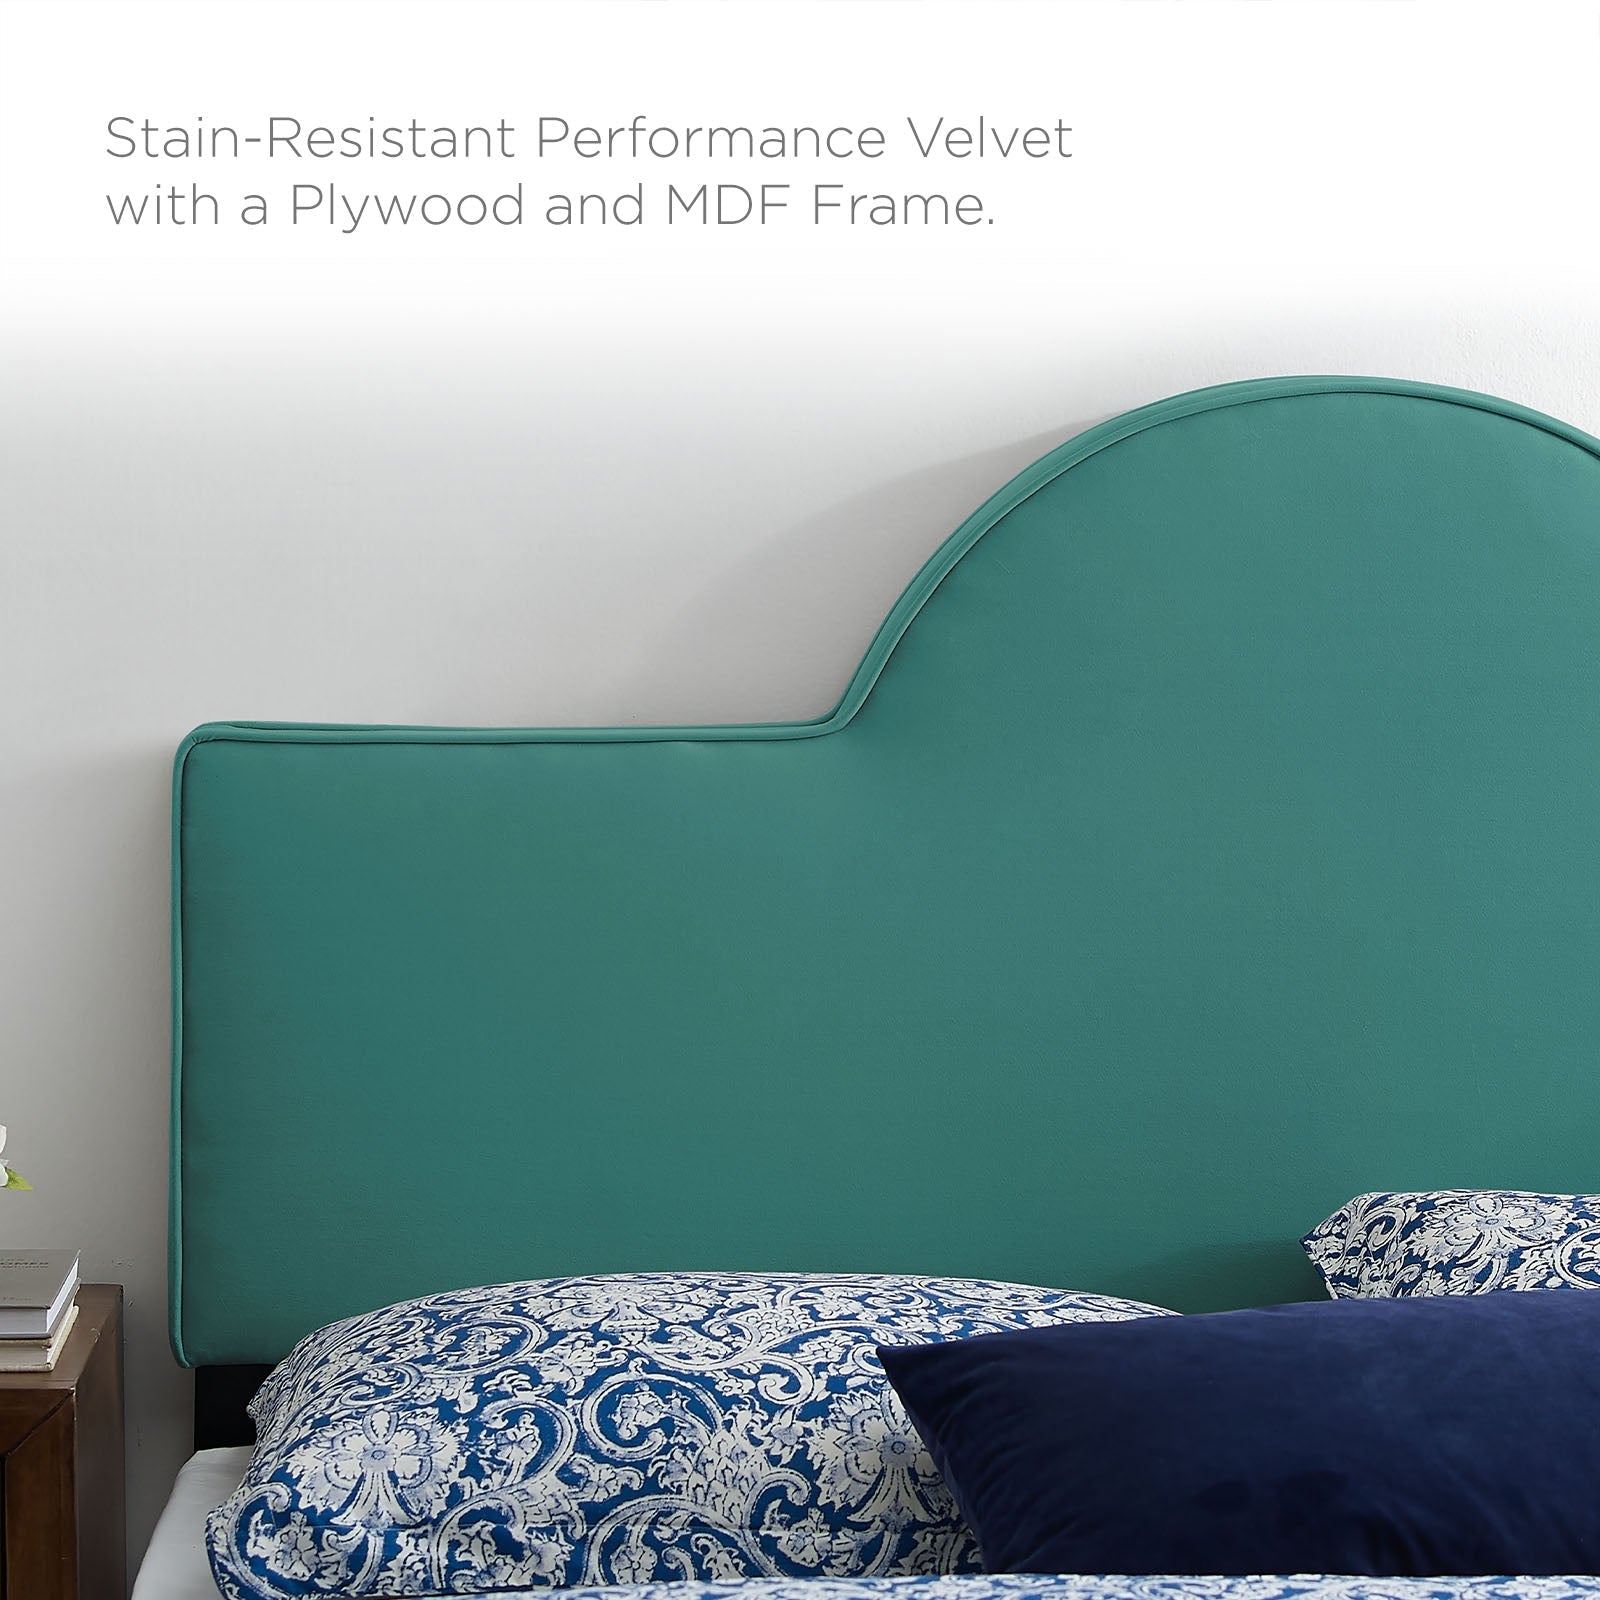 Aurora Performance Velvet Bed - East Shore Modern Home Furnishings